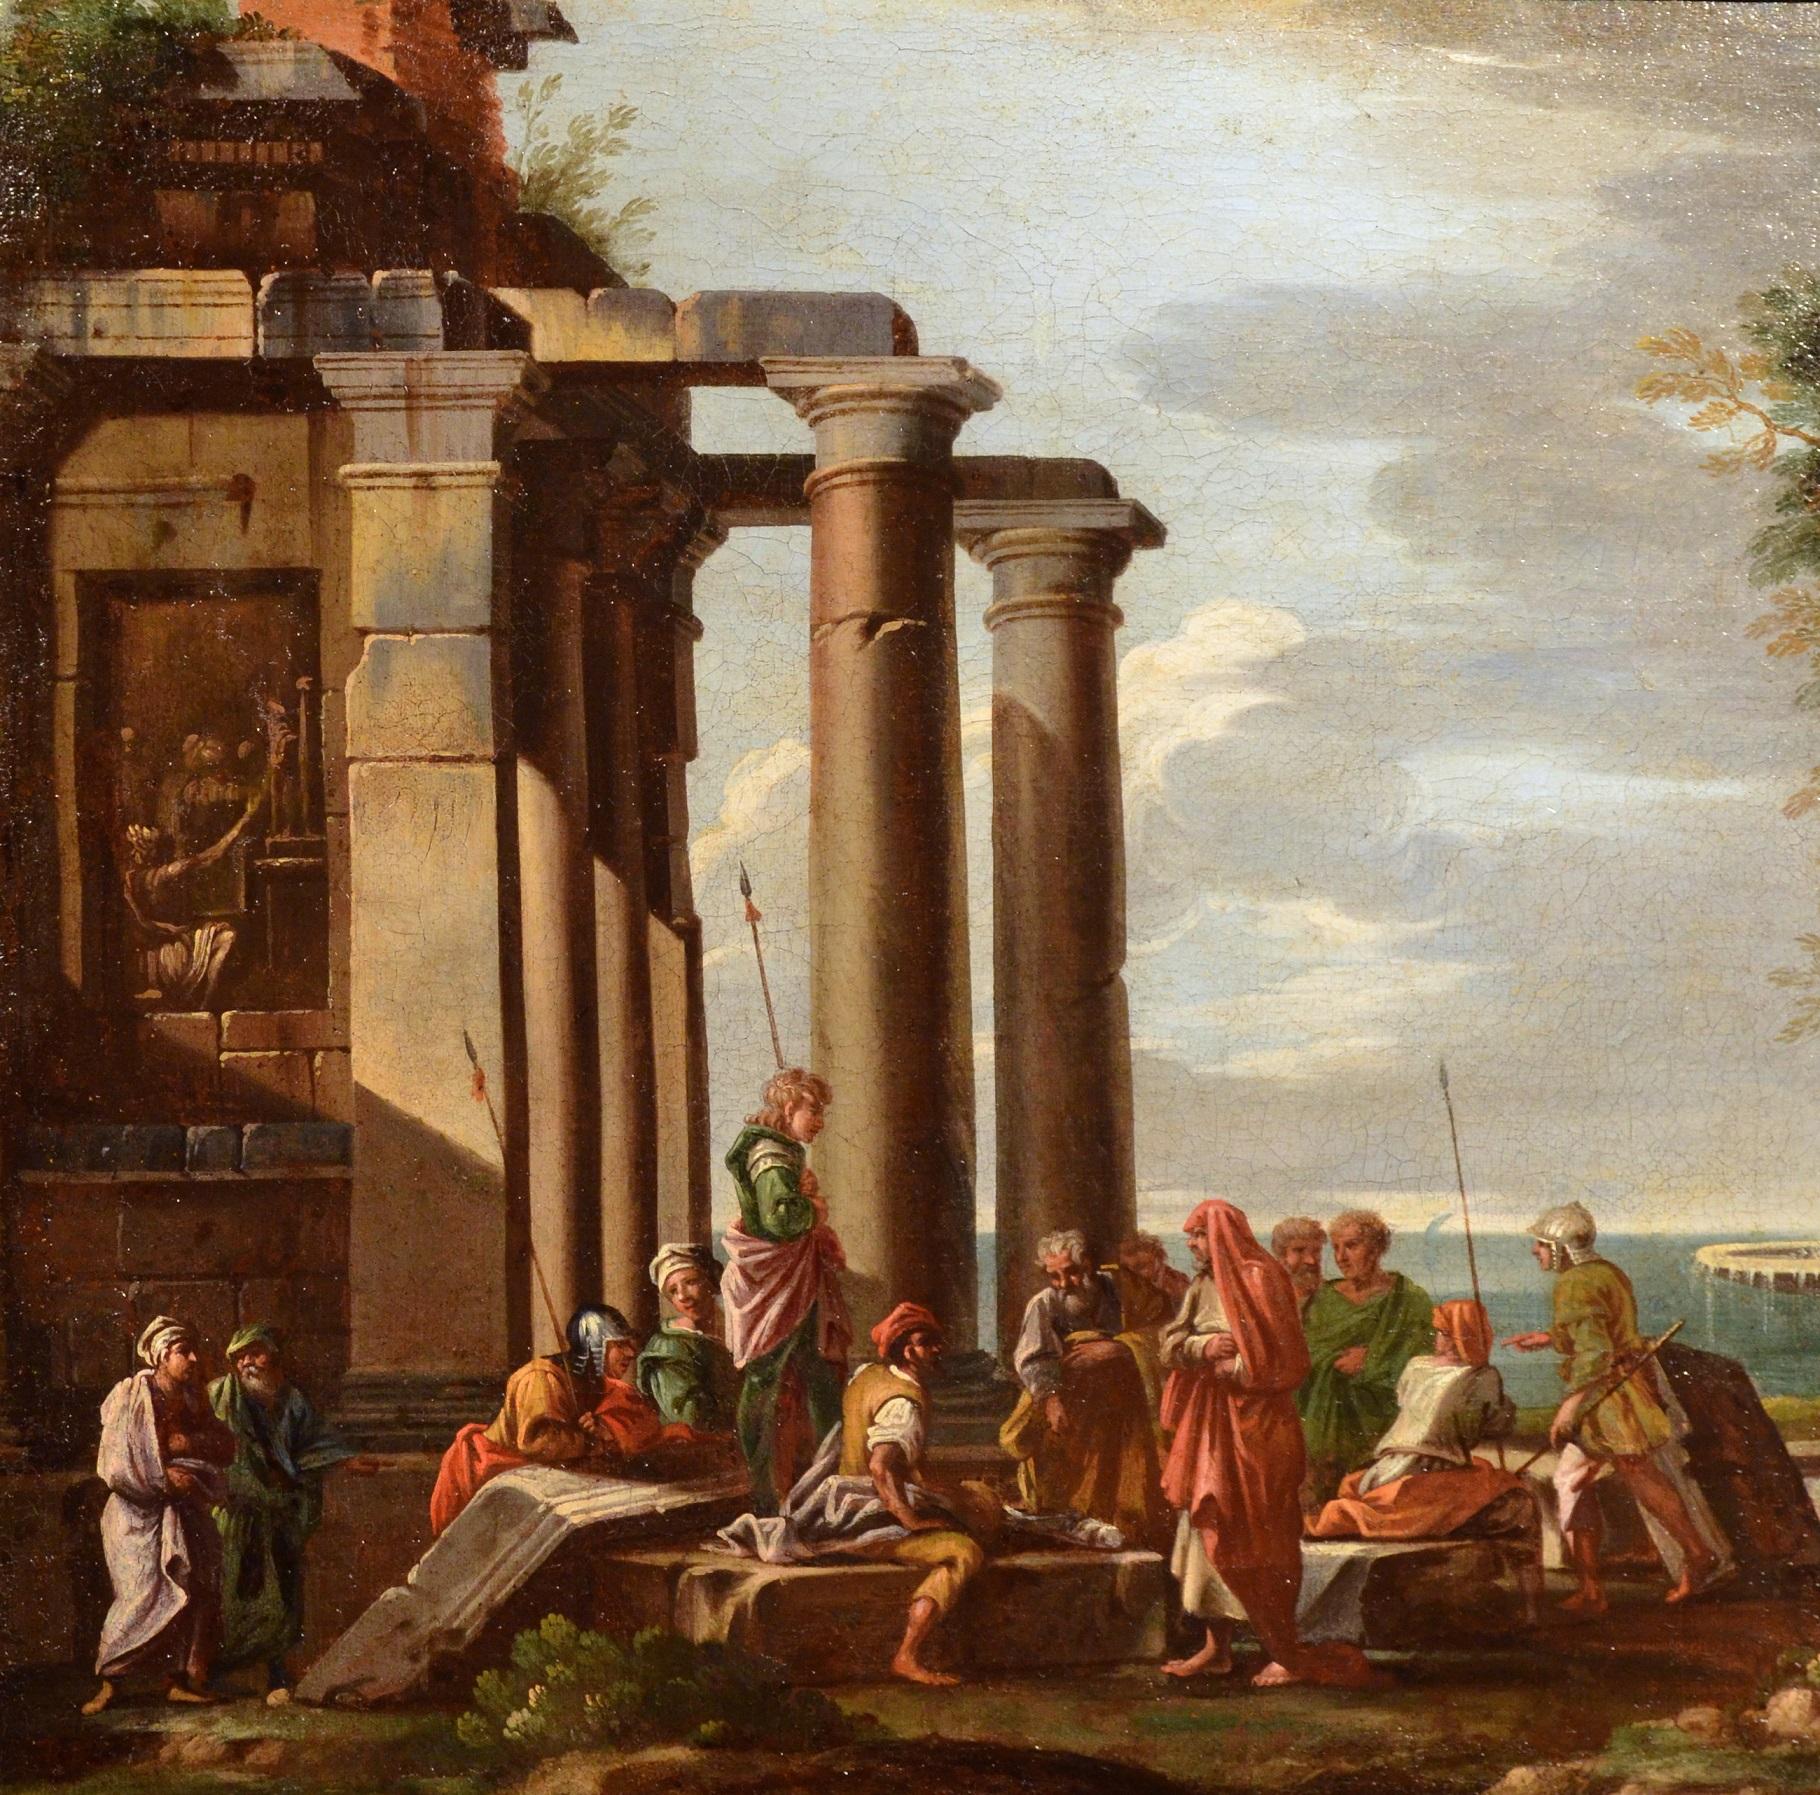 Ghisolfi Gemälde Öl auf Leinwand, alter Meister, 17. Jahrhundert, architektonische Capriccio-Kunst (Alte Meister), Painting, von Giovanni Ghisolfi (Milan 1623 - 1683)